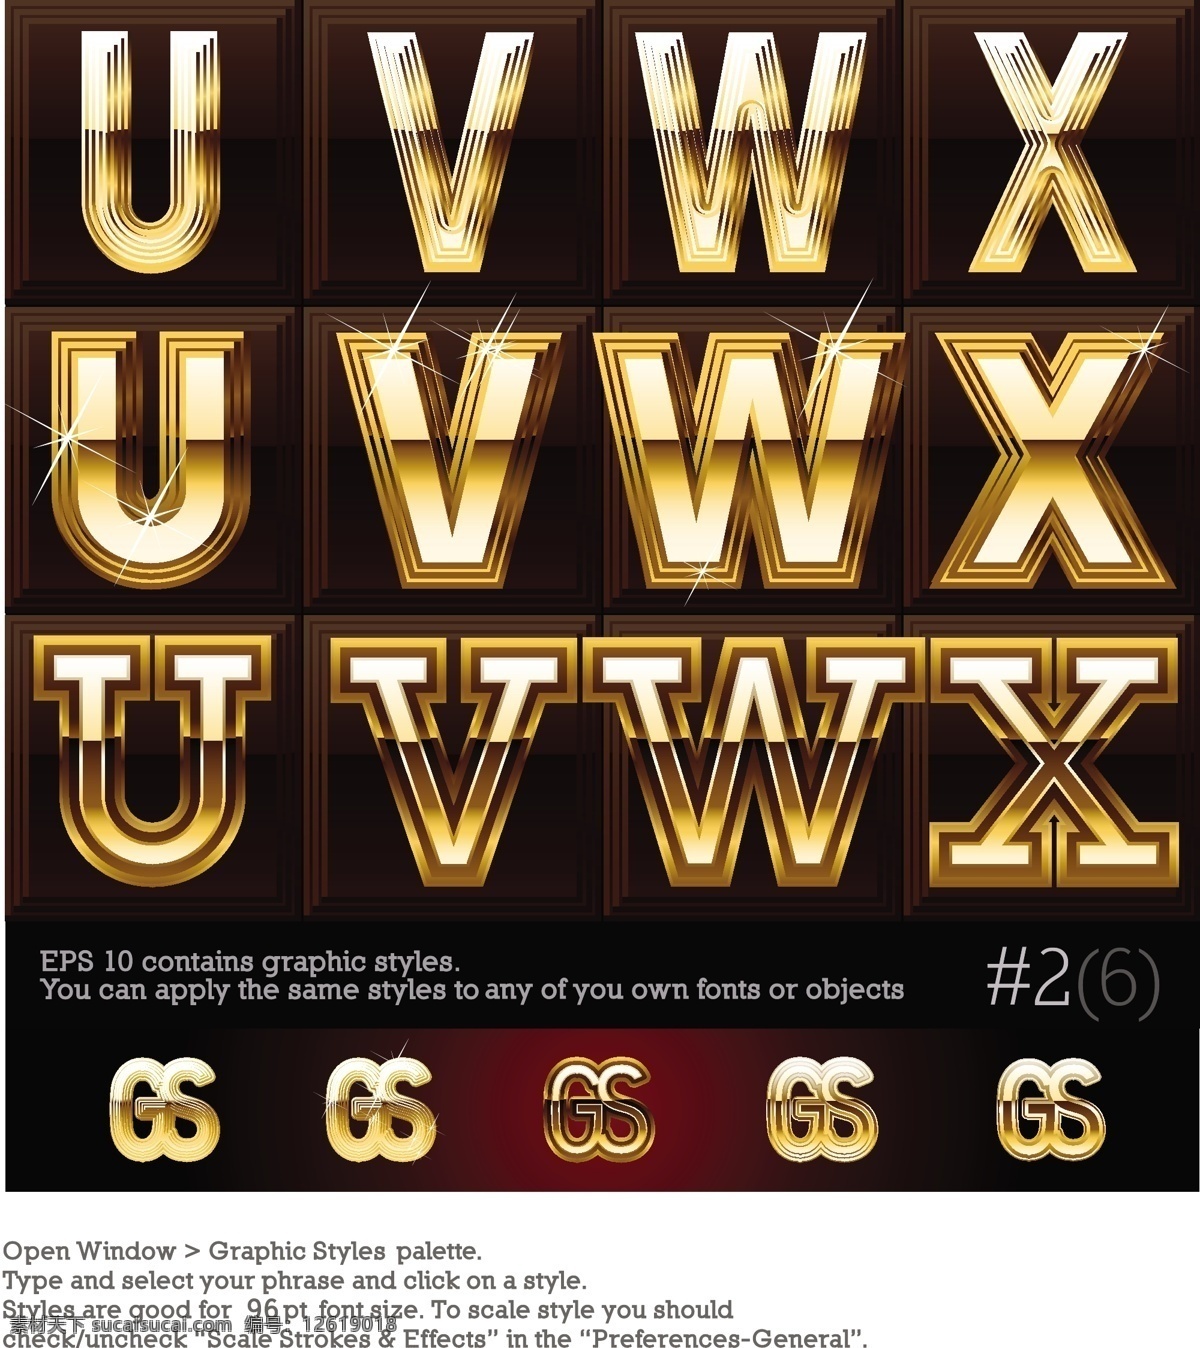 黄金字 立体字 金属字 艺术字 字体设计 黄金质感 字母 书画文字 文化艺术 矢量素材 黑色